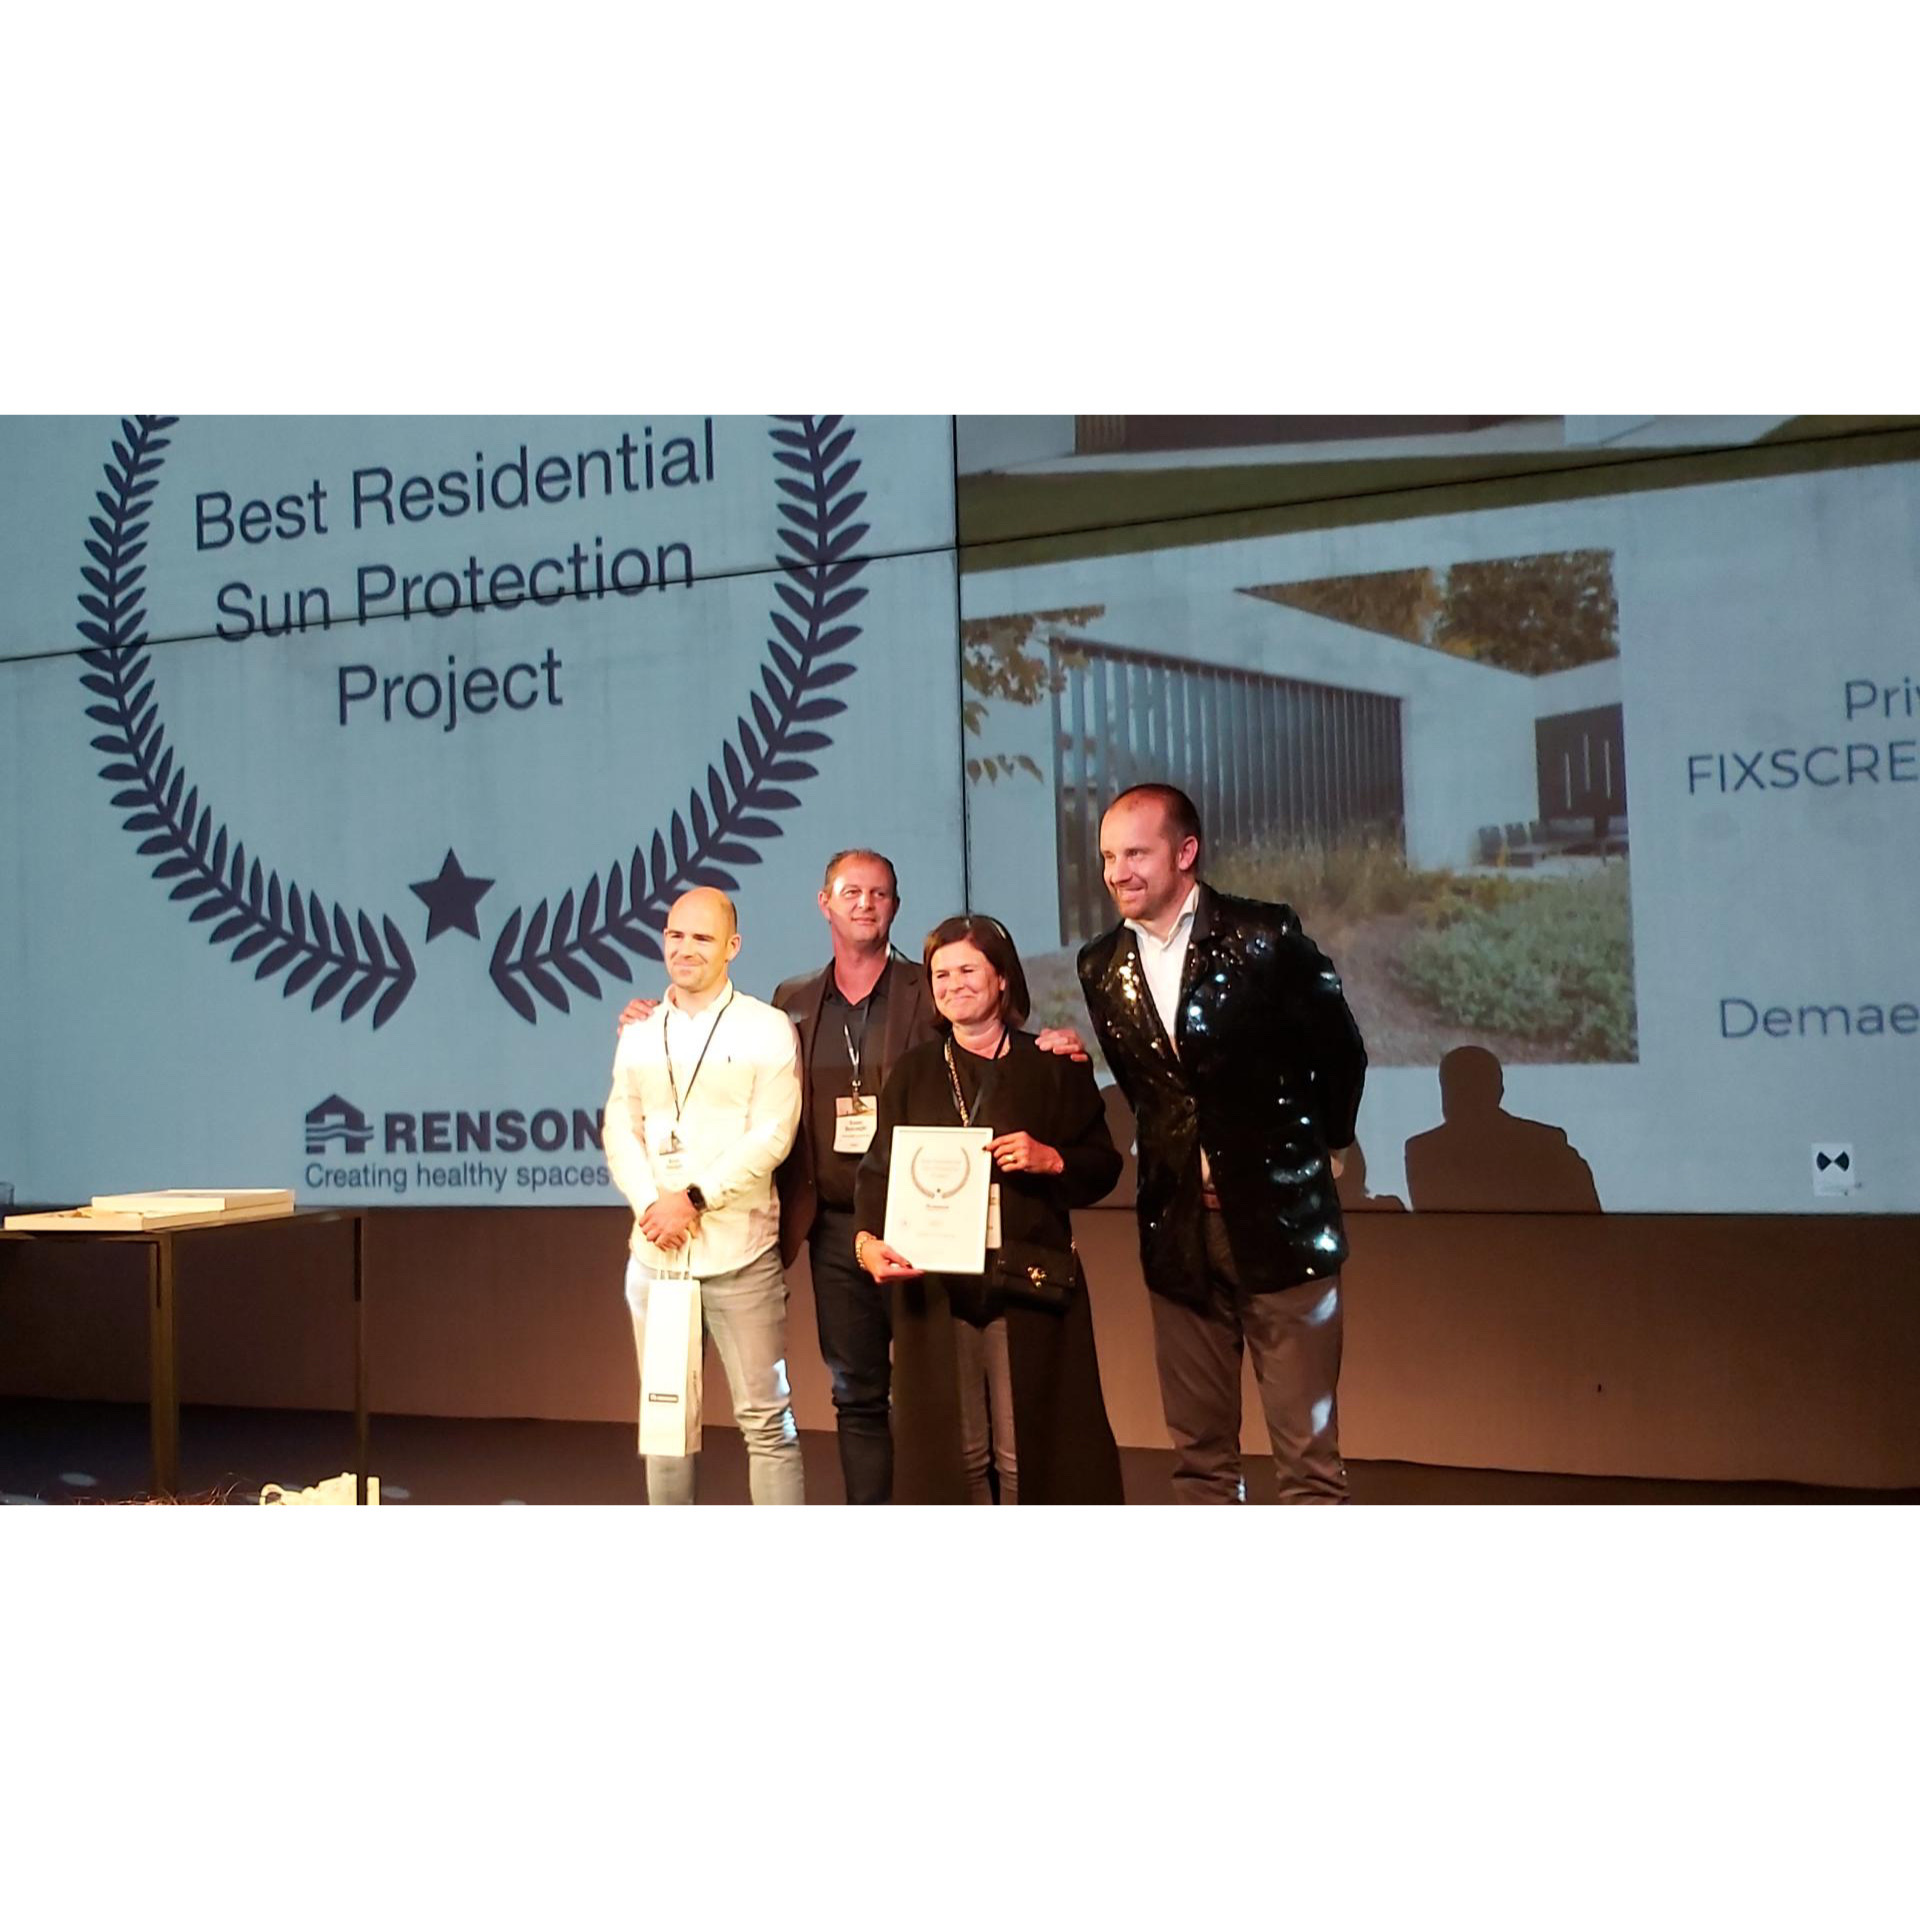 Demaeght zonwering en interieur mocht de Renson Award in ontvangst nemen op de nieuwe site De prijkels te Deinze.